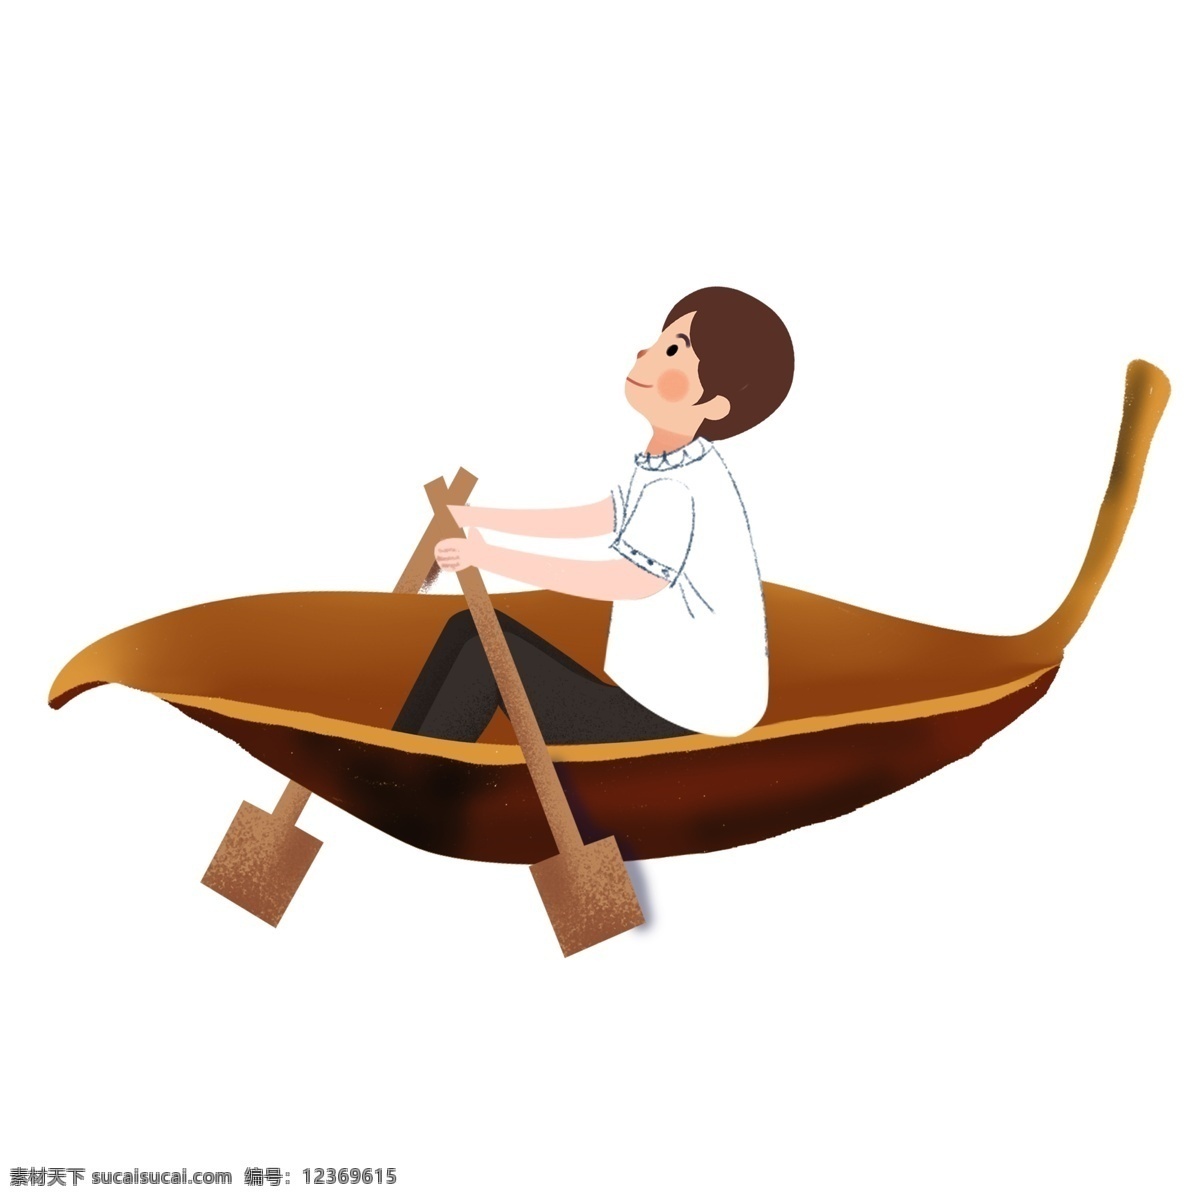 划 木船 男孩 图案 元素 人物 划船 设计元素 简约 手绘 创意元素 手绘元素 psd元素